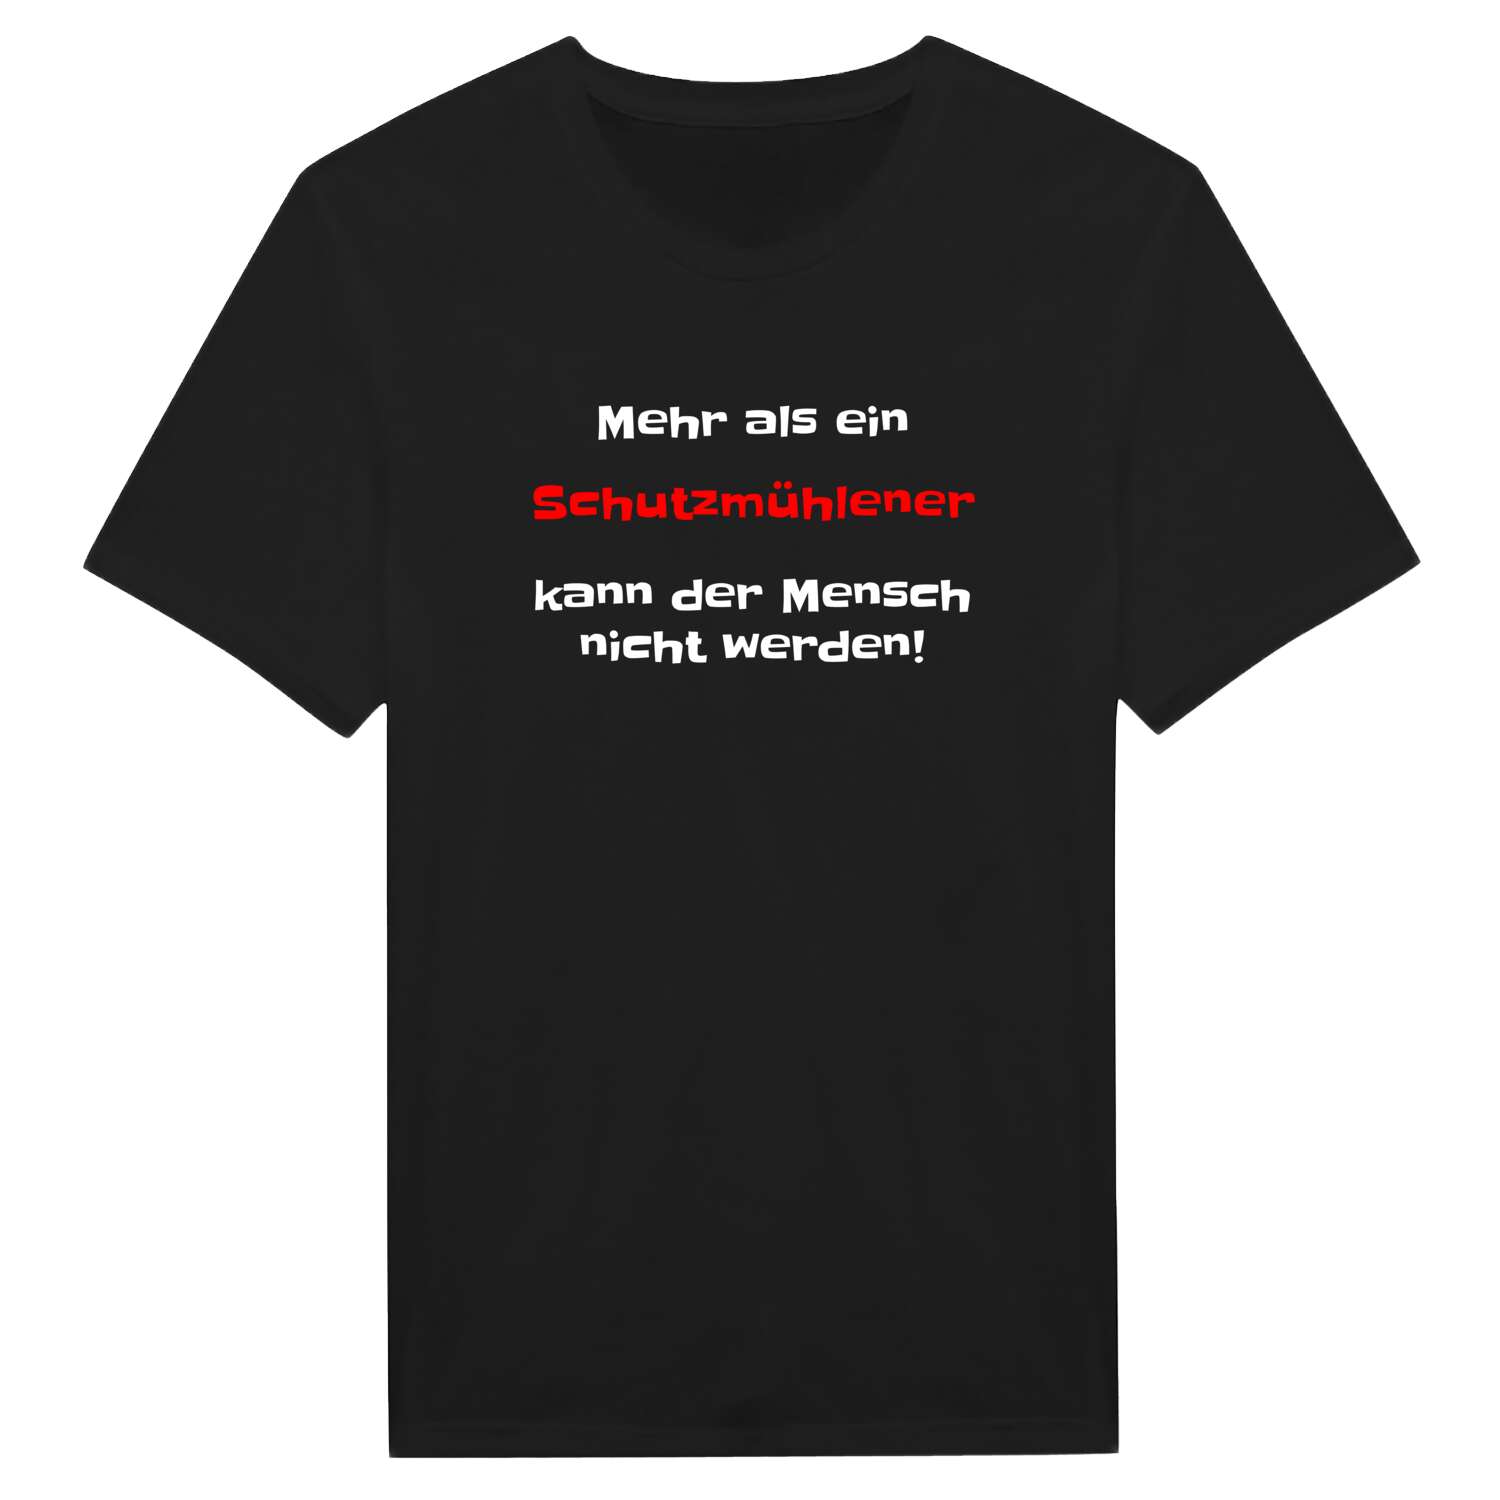 Schutzmühle T-Shirt »Mehr als ein«